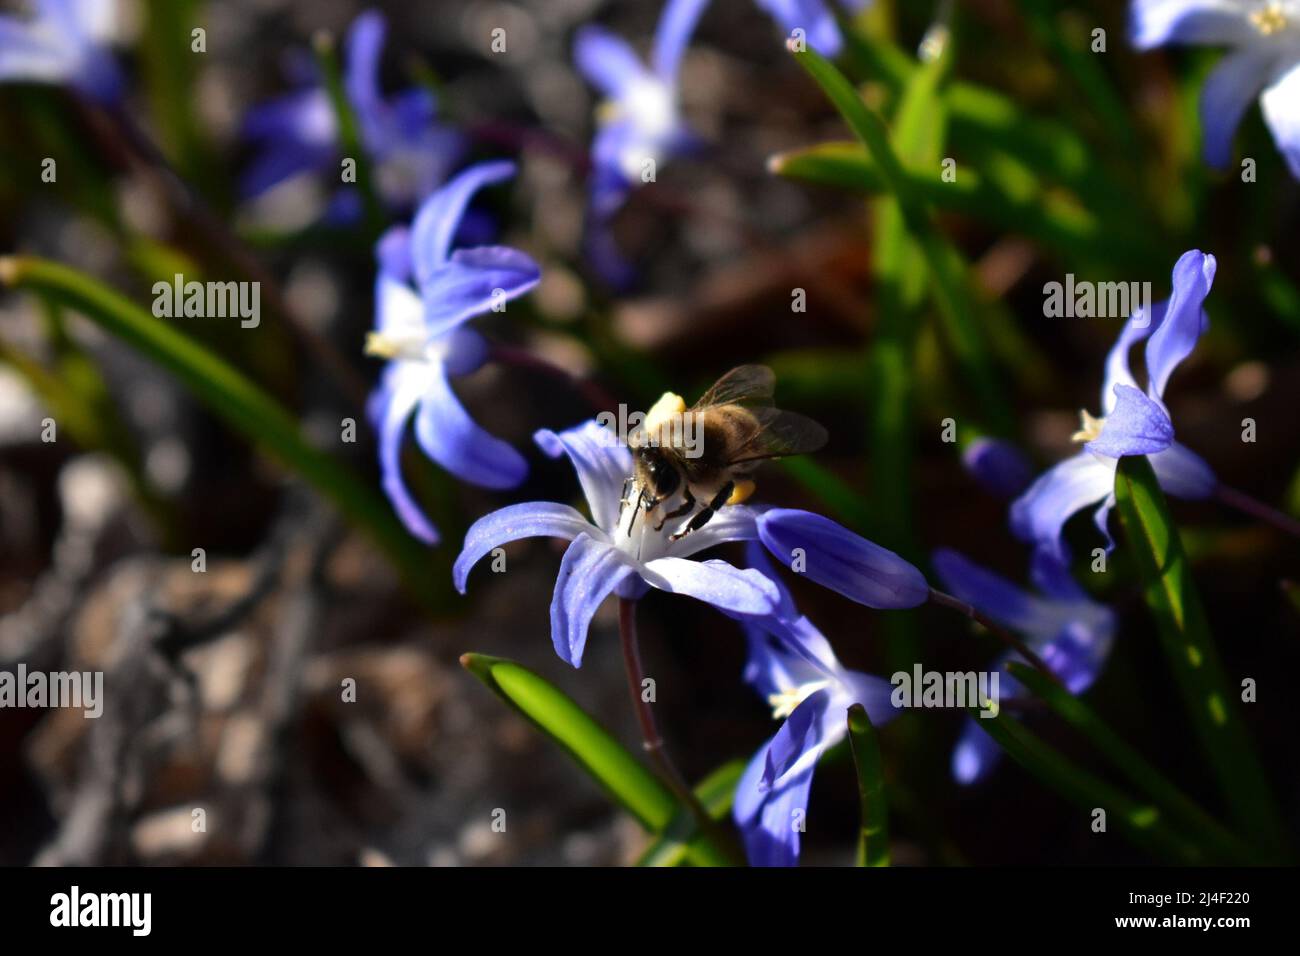 Blüte, Blume, Biene, Bloom, Blossom, Bee, Nektar, Natur, Frühling, Summen, Jahreszeiten, Umweltschutz, Environment, Light and Shadow, Sustainibility Stock Photo